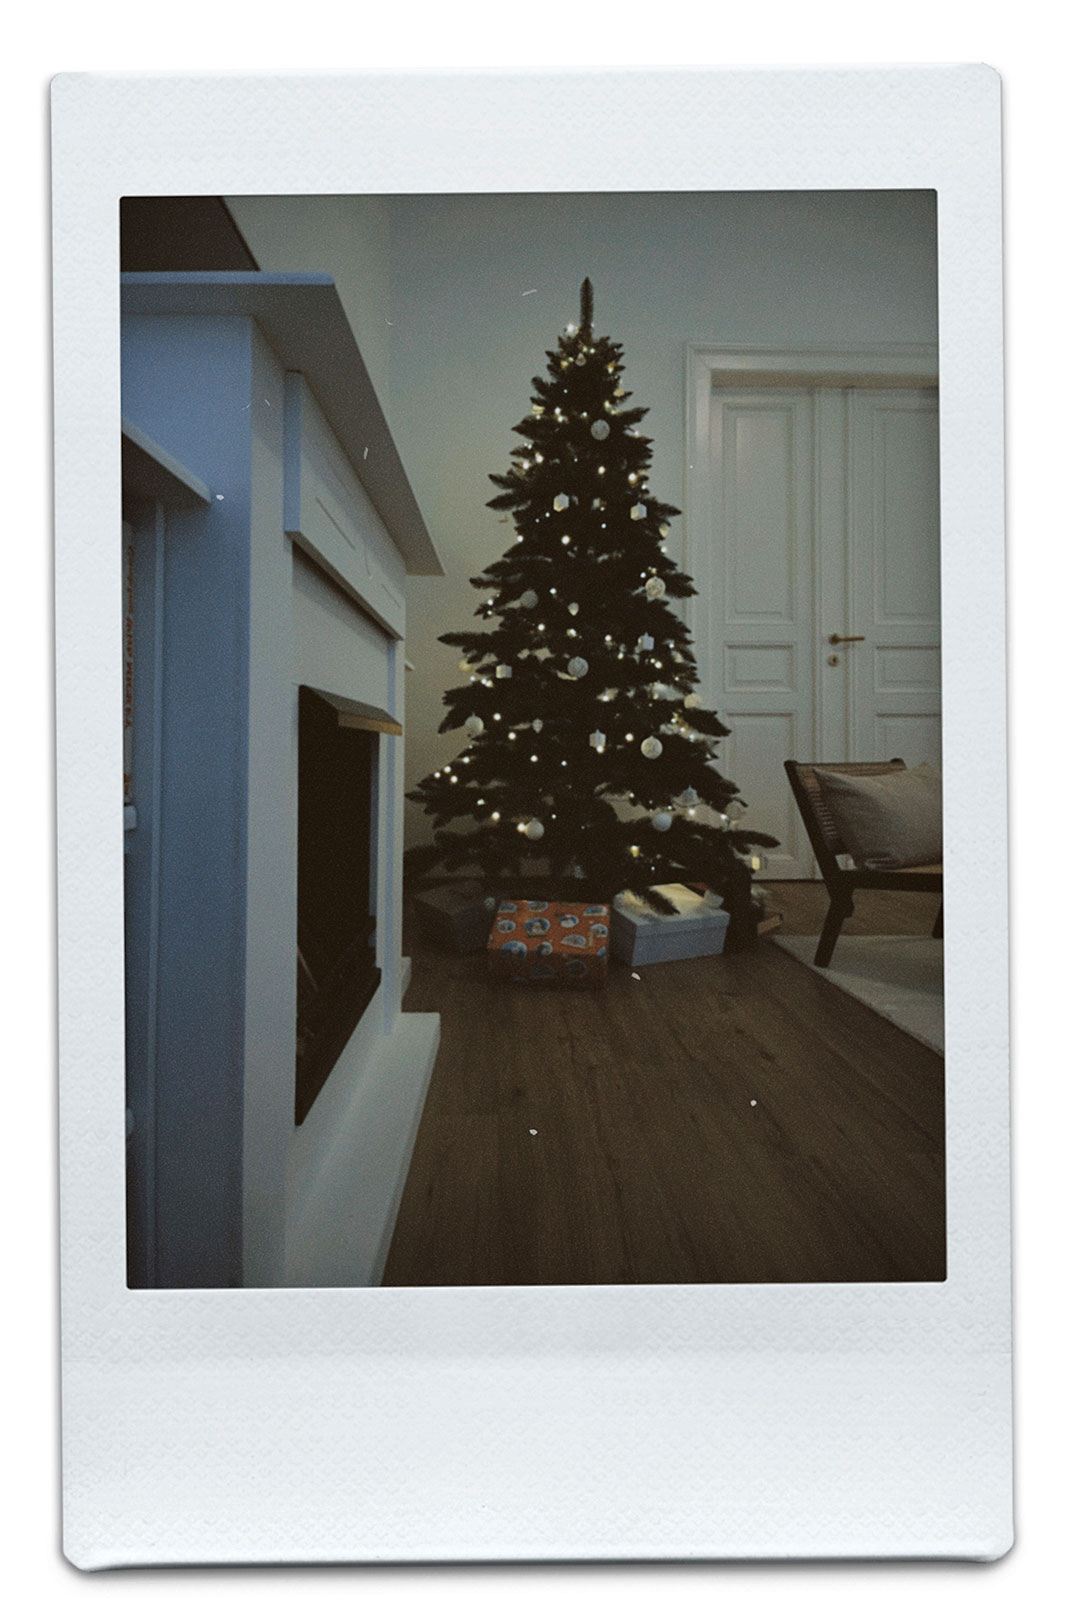 Weihnachtsbaum und Kamin mit Geschenke.